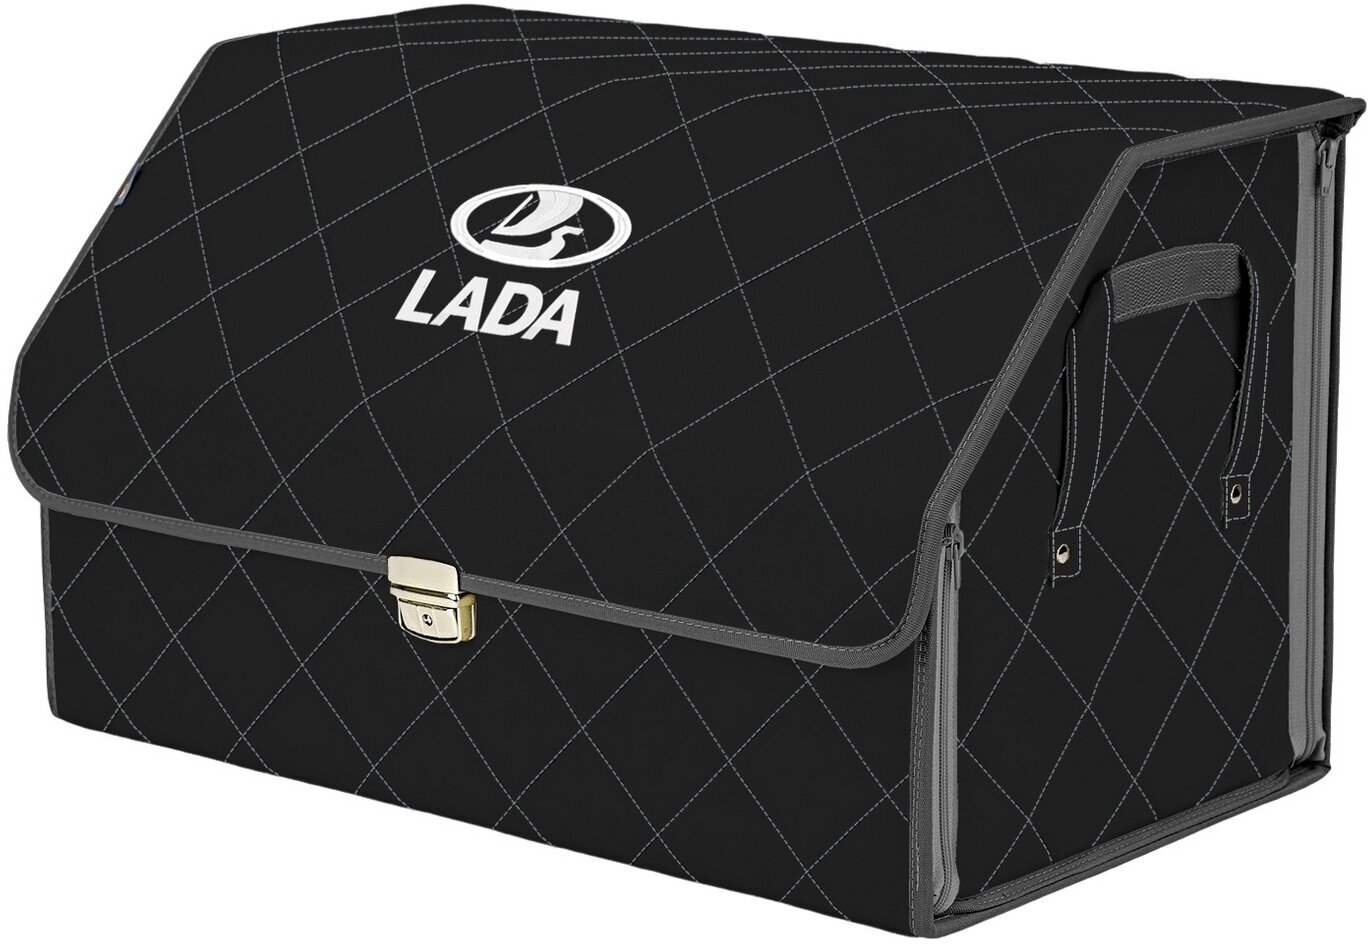 Органайзер-саквояж в багажник "Союз Премиум" (размер XL). Цвет: черный с серой прострочкой Ромб и вышивкой LADA (лада).